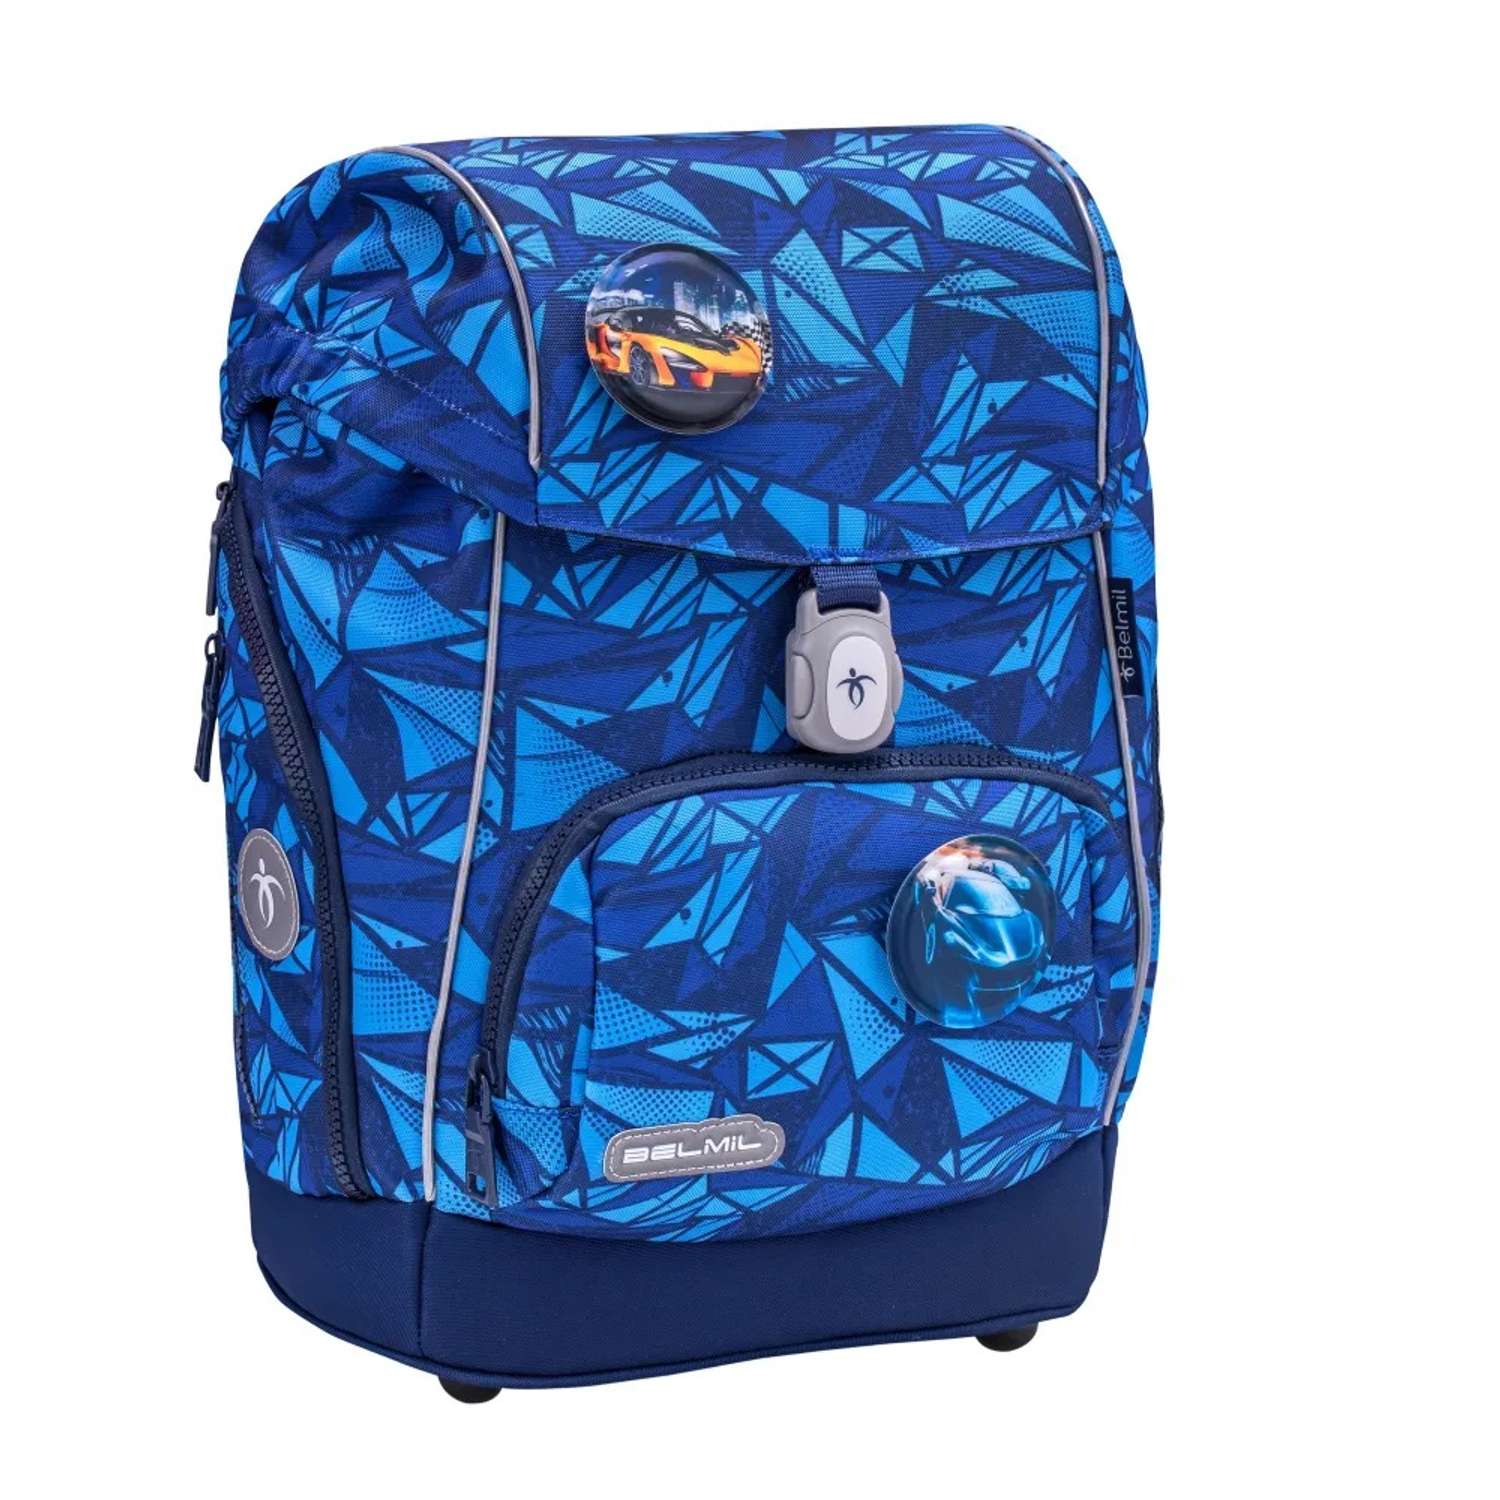 Школьный ранец BELMIL Premium Comfy Plus Glacier Blue с наполнением серия 405-73-P-RS-10 - фото 2